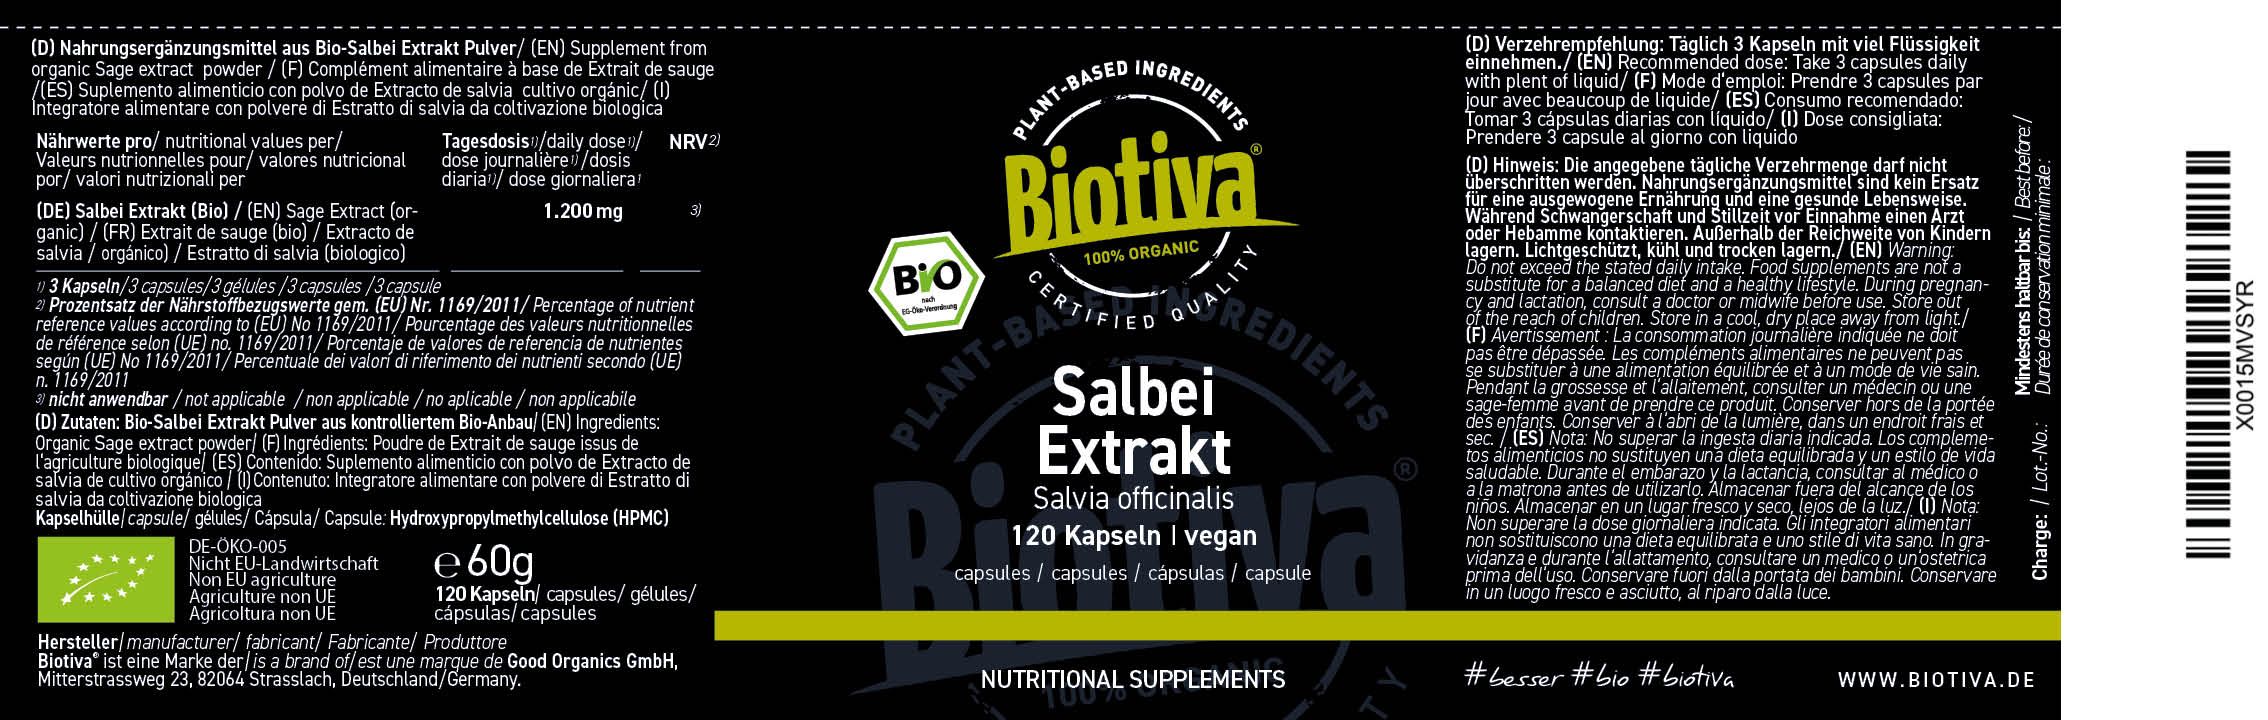 Biotiva Salbei Extrakt Kapseln Bio